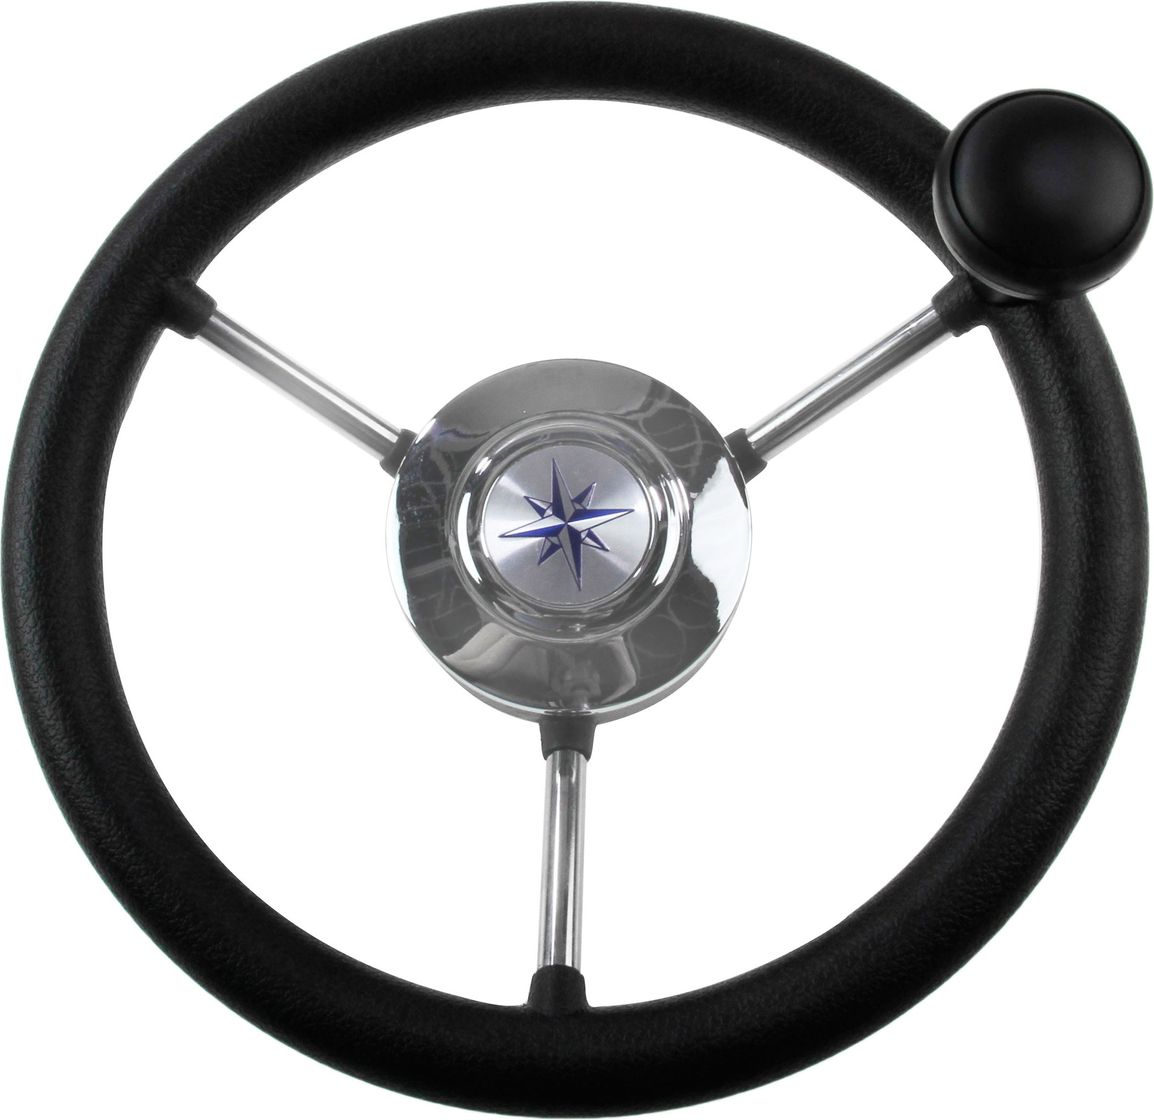 Рулевое колесо LIPARI обод черный, спицы серебряные д. 280 мм со спинером VN828050-01 рулевое колесо lipari обод белый спицы серебряные д 280 мм со спинером vn828050 08